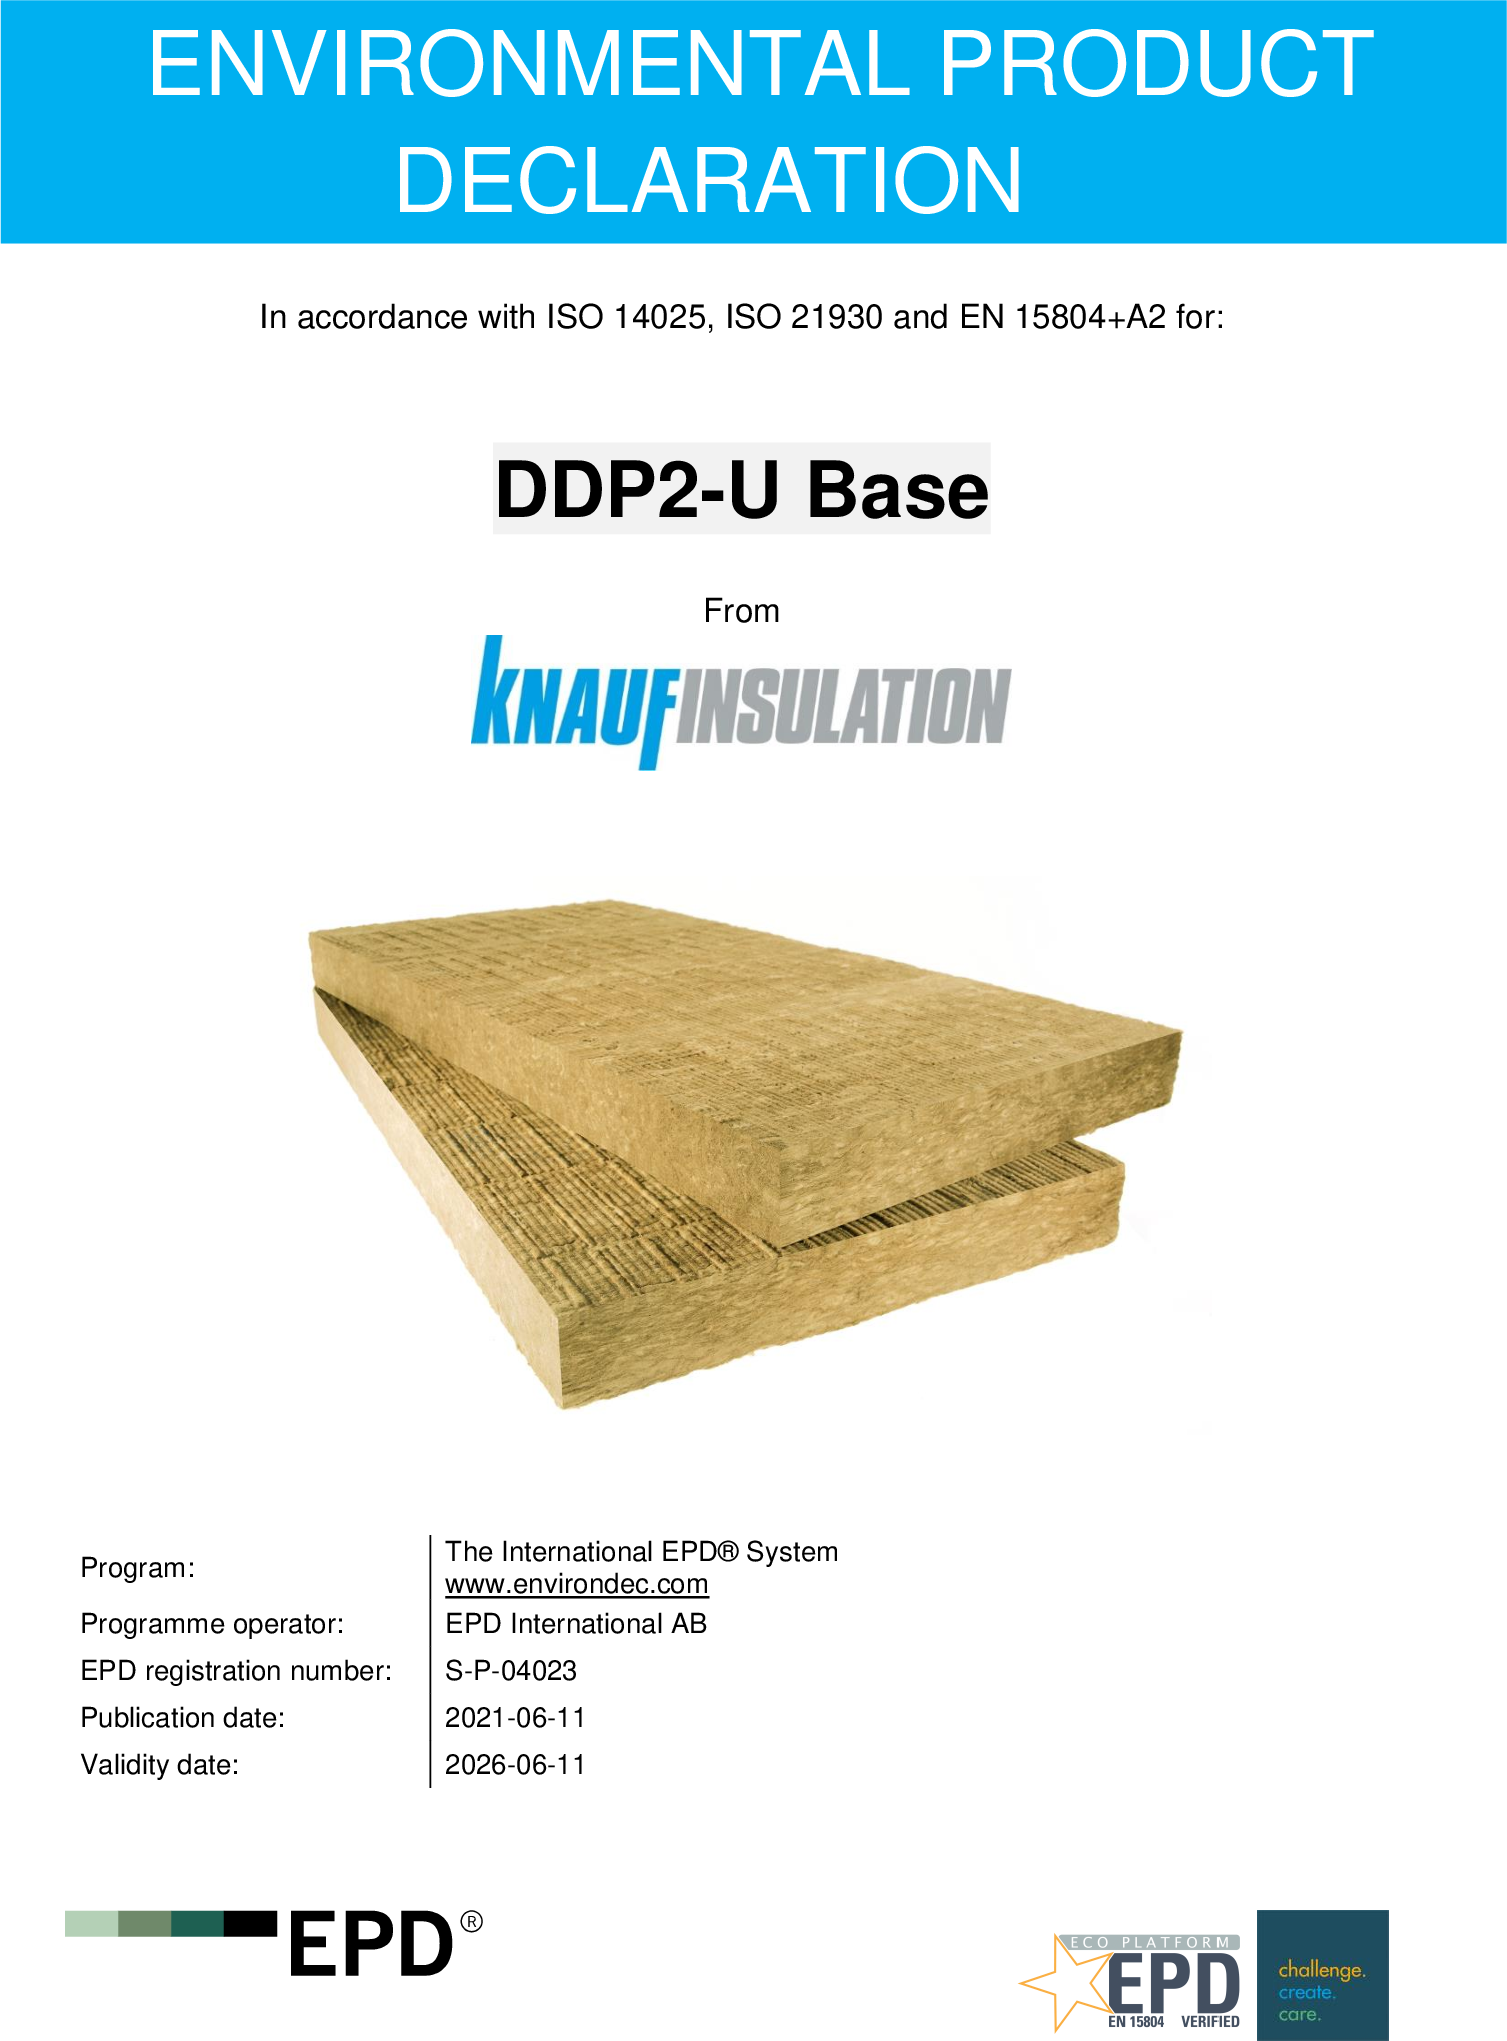 DDP2-U Base